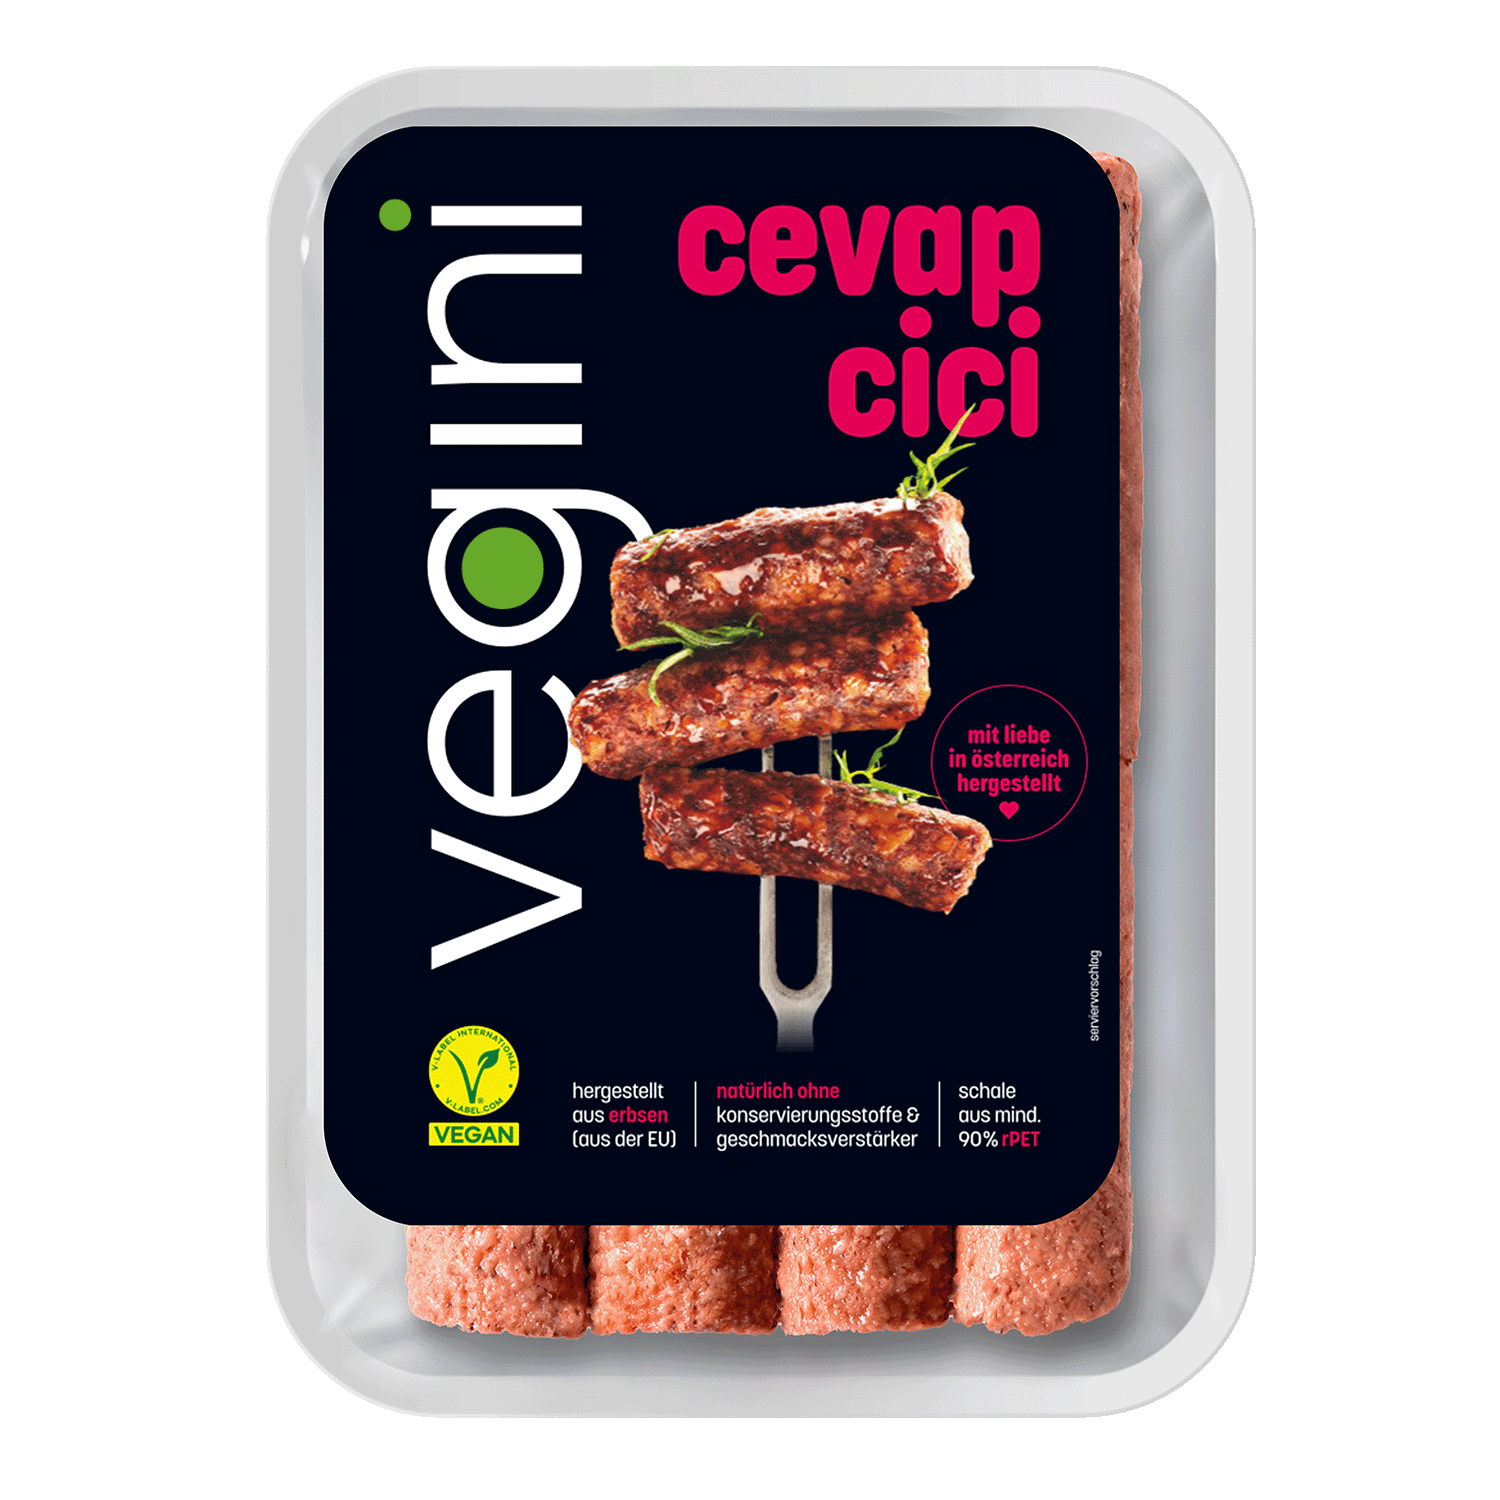 Vegini vegane Cevapcici 200g (8 Stück)